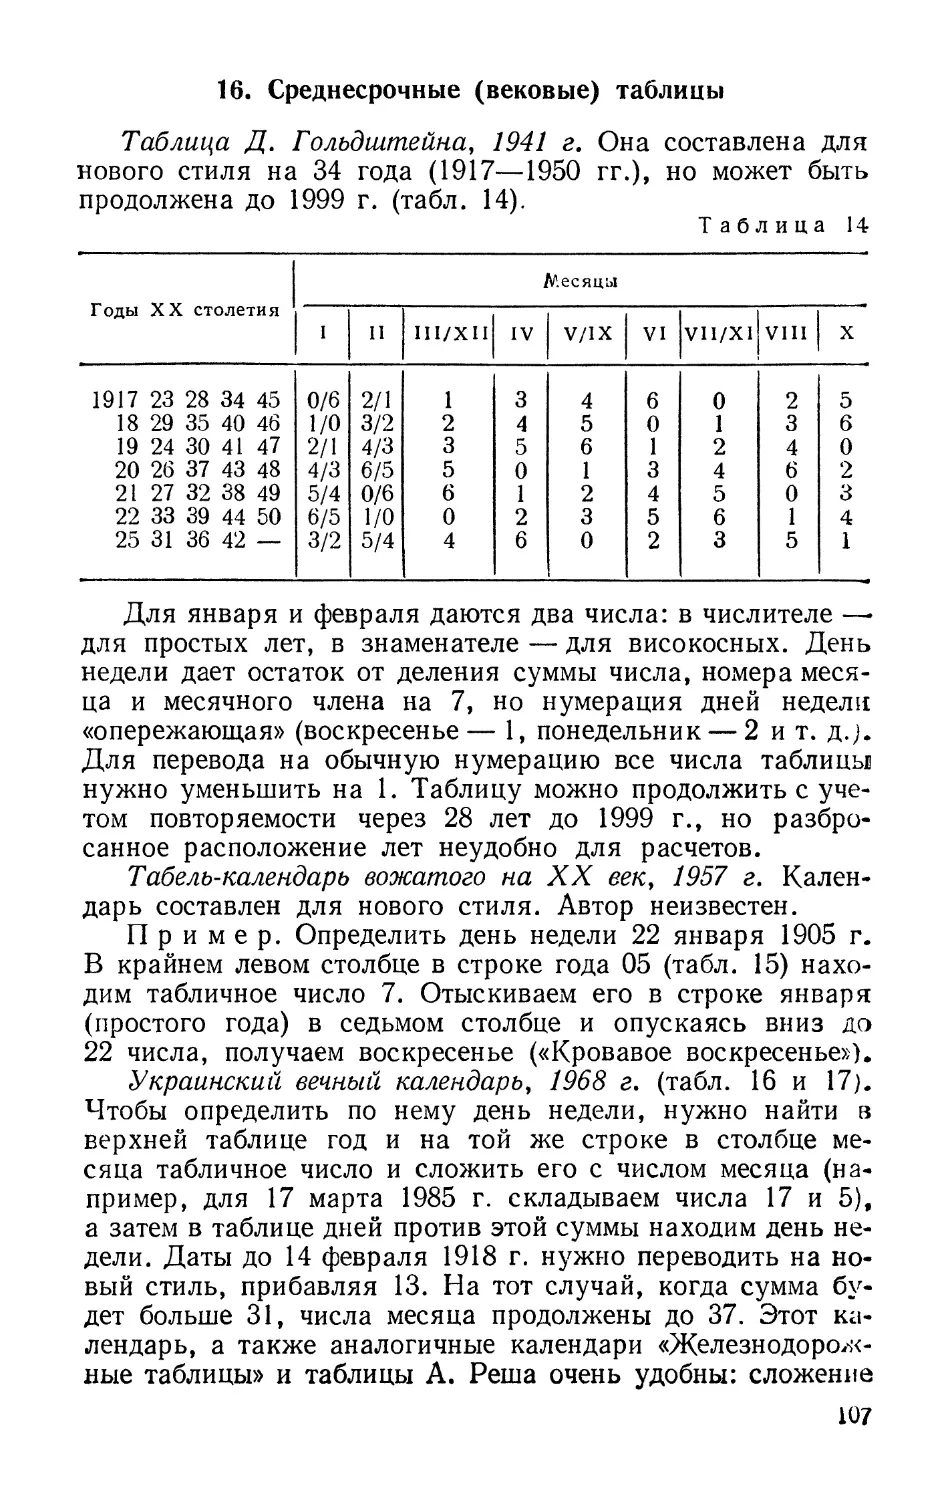 Таблица Д. Гольдштейна, 1941 г.
Табель-календарь вожатого на XX век, 1957 г.
Украинский вечный календарь, 1968 г.